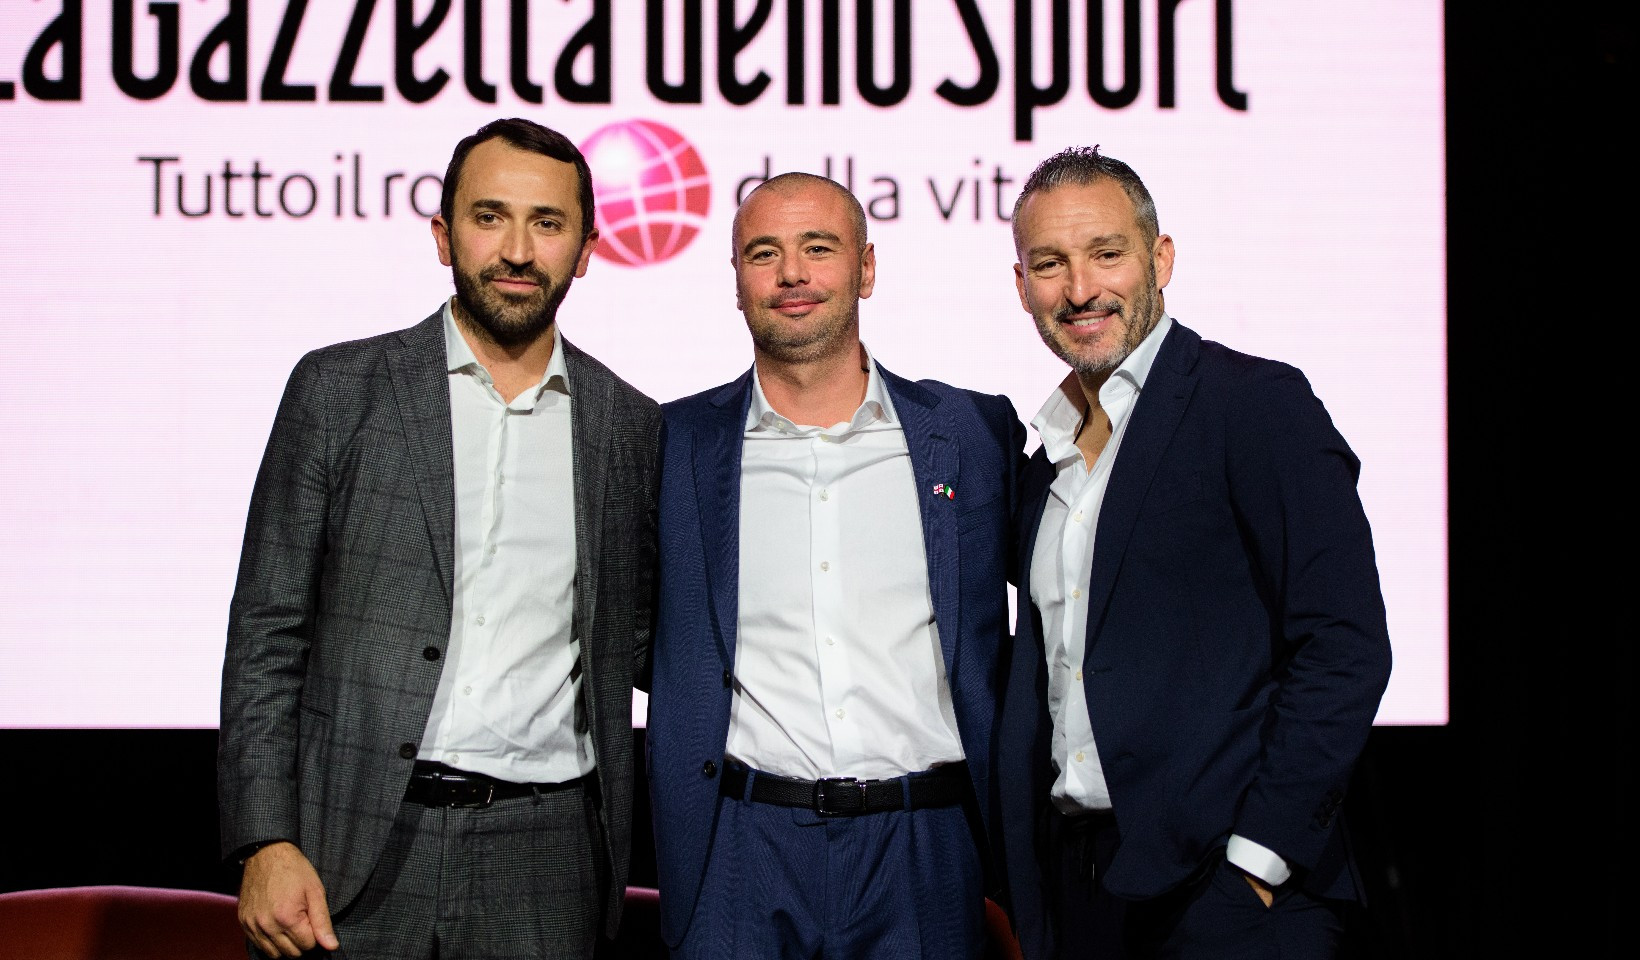 La Gazzetta Dello Sport უკვე საქართველოშია!